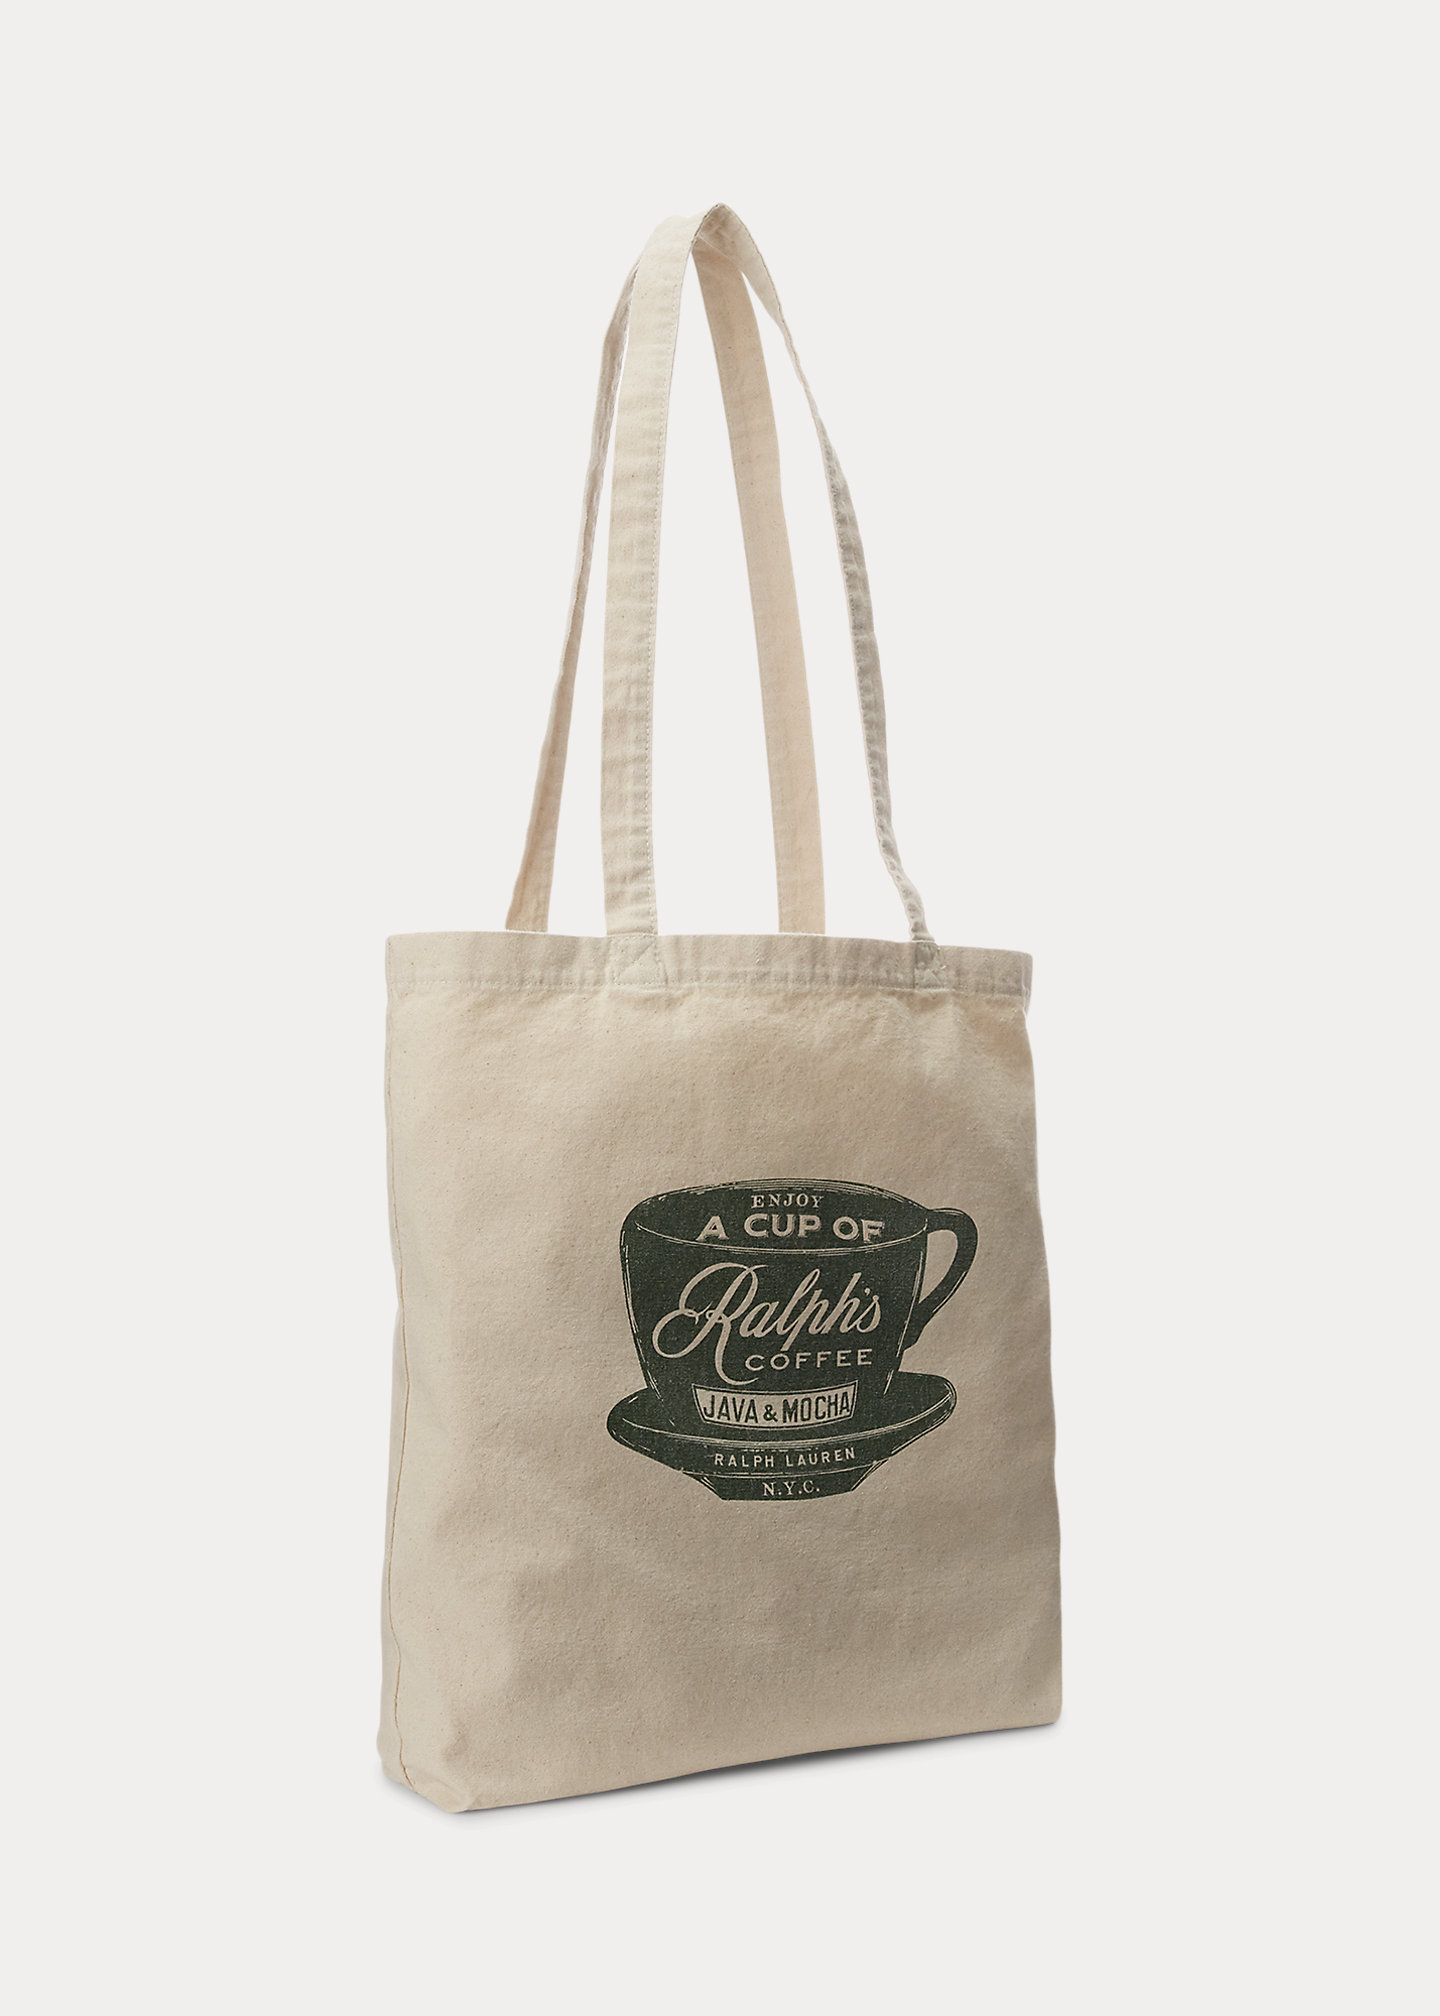 Brand bag Ralph’s Coffee Tote Bag-,$1.43-0